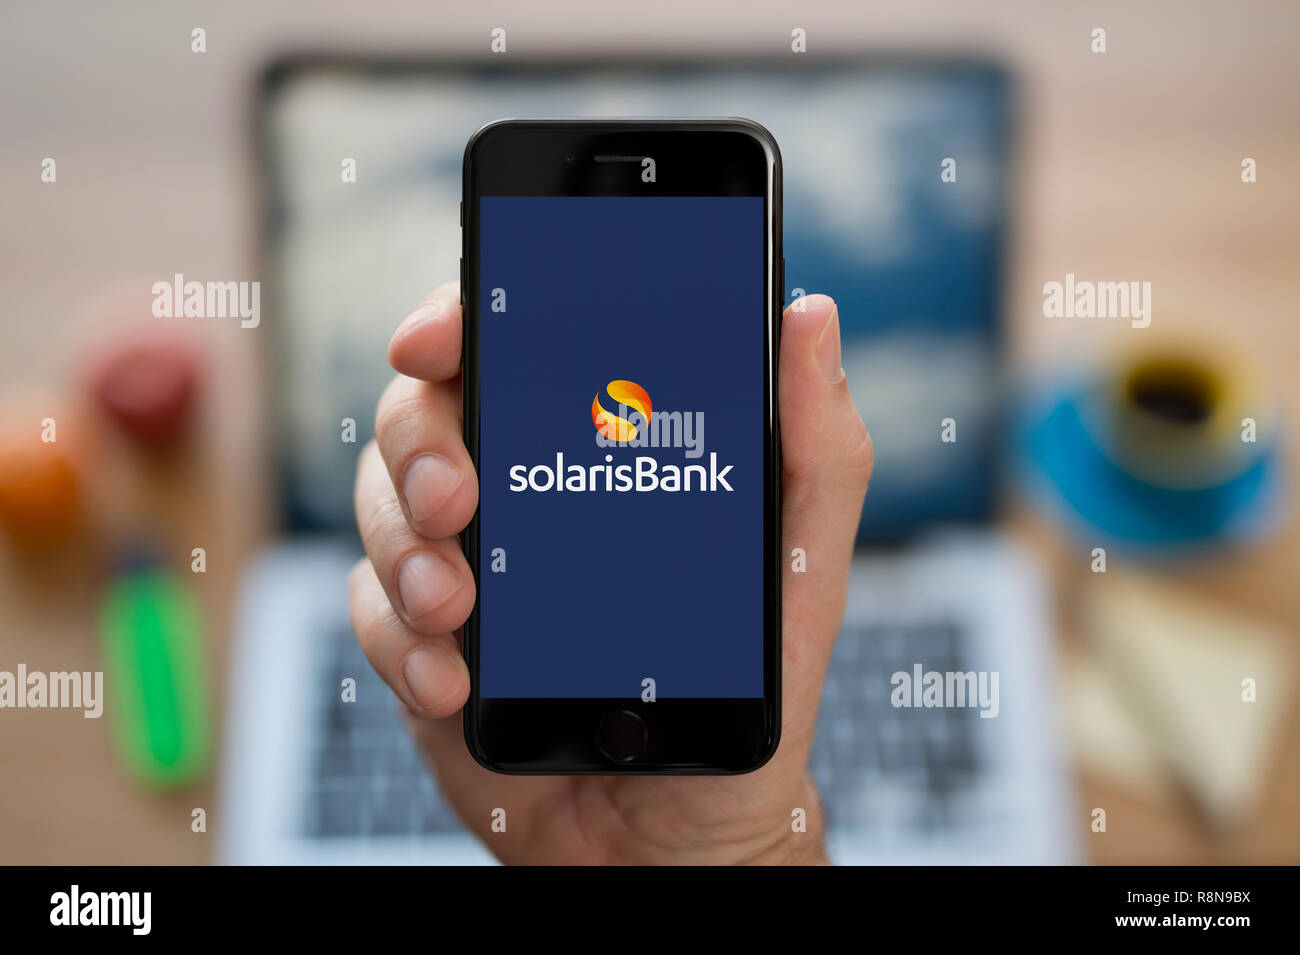 Un uomo guarda al suo iPhone che visualizza la banca Solaris logo (solo uso editoriale). Foto Stock